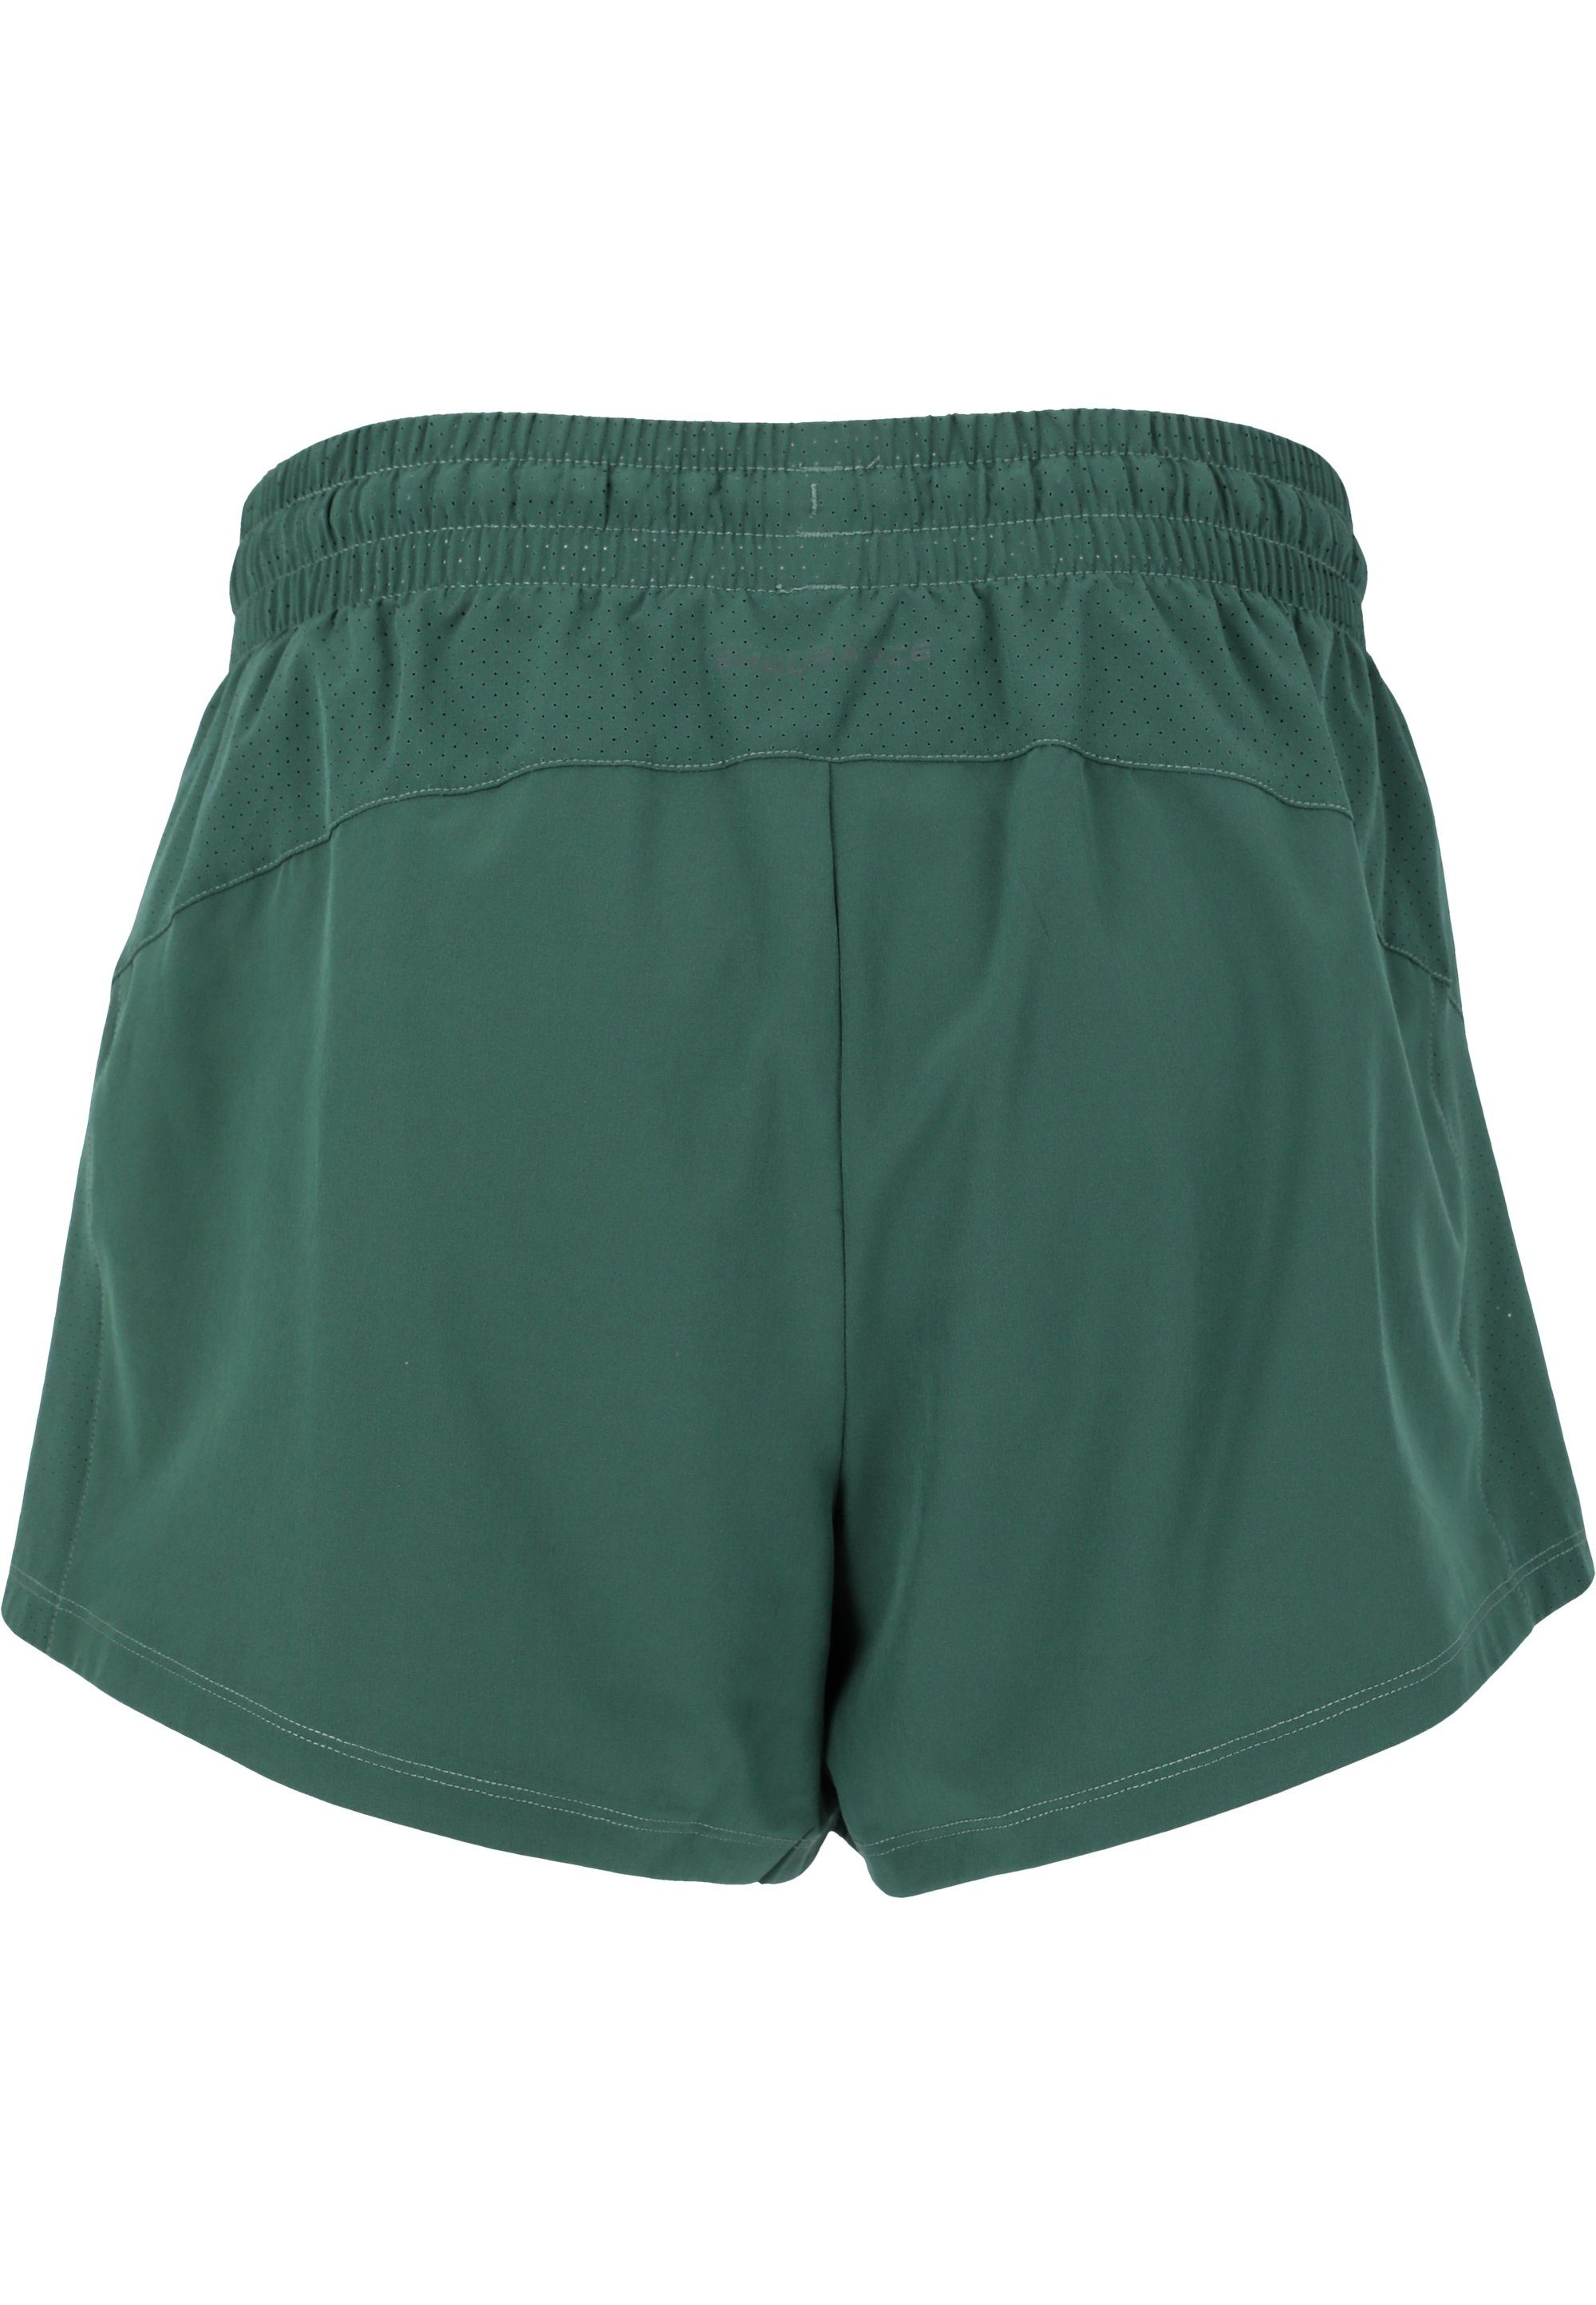 ENDURANCE Eslaire Taschen grün praktischen mit Shorts